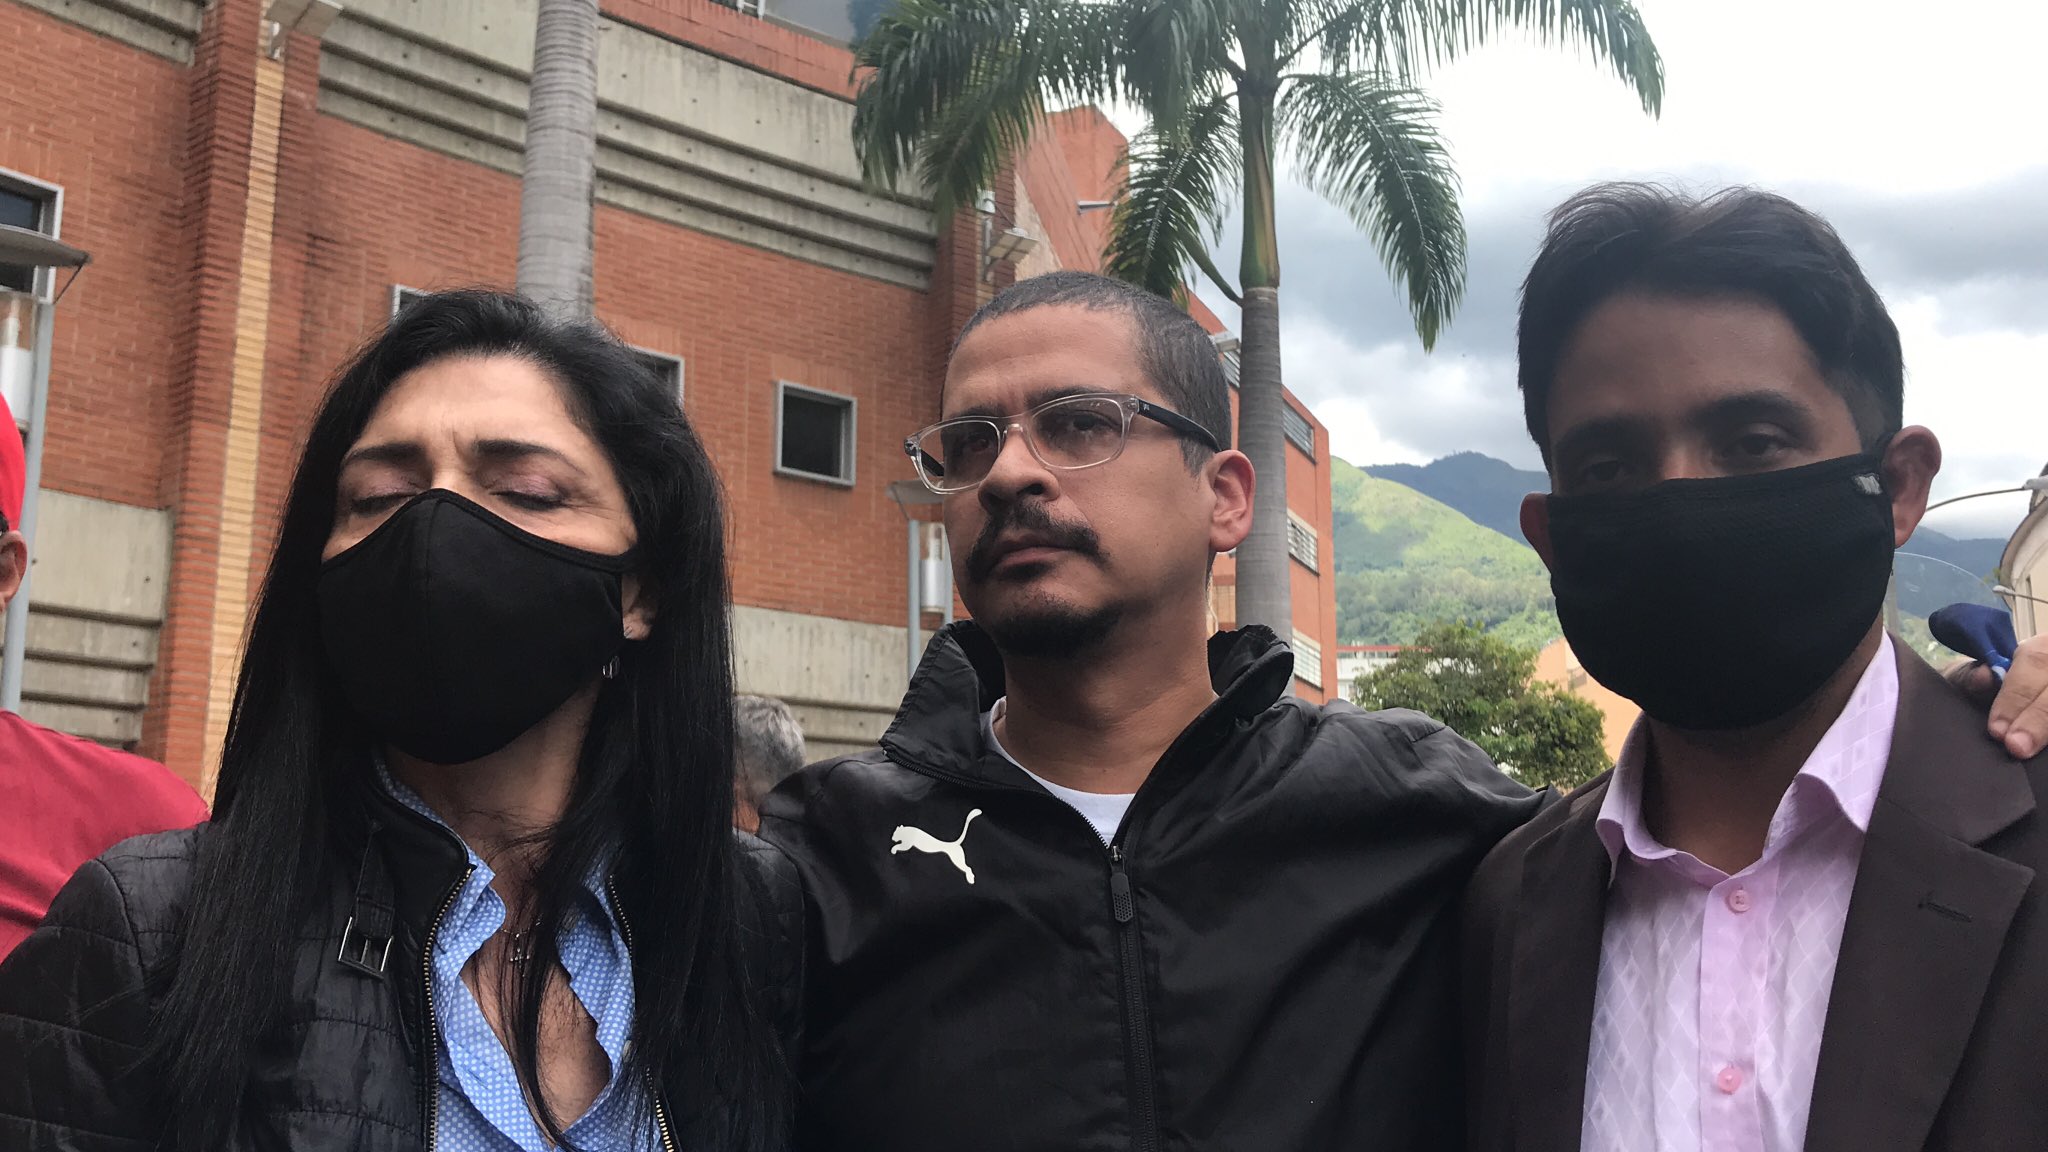 Nicmer Evans rompió el silencio sobre su estadía en los calabozos del régimen de Maduro